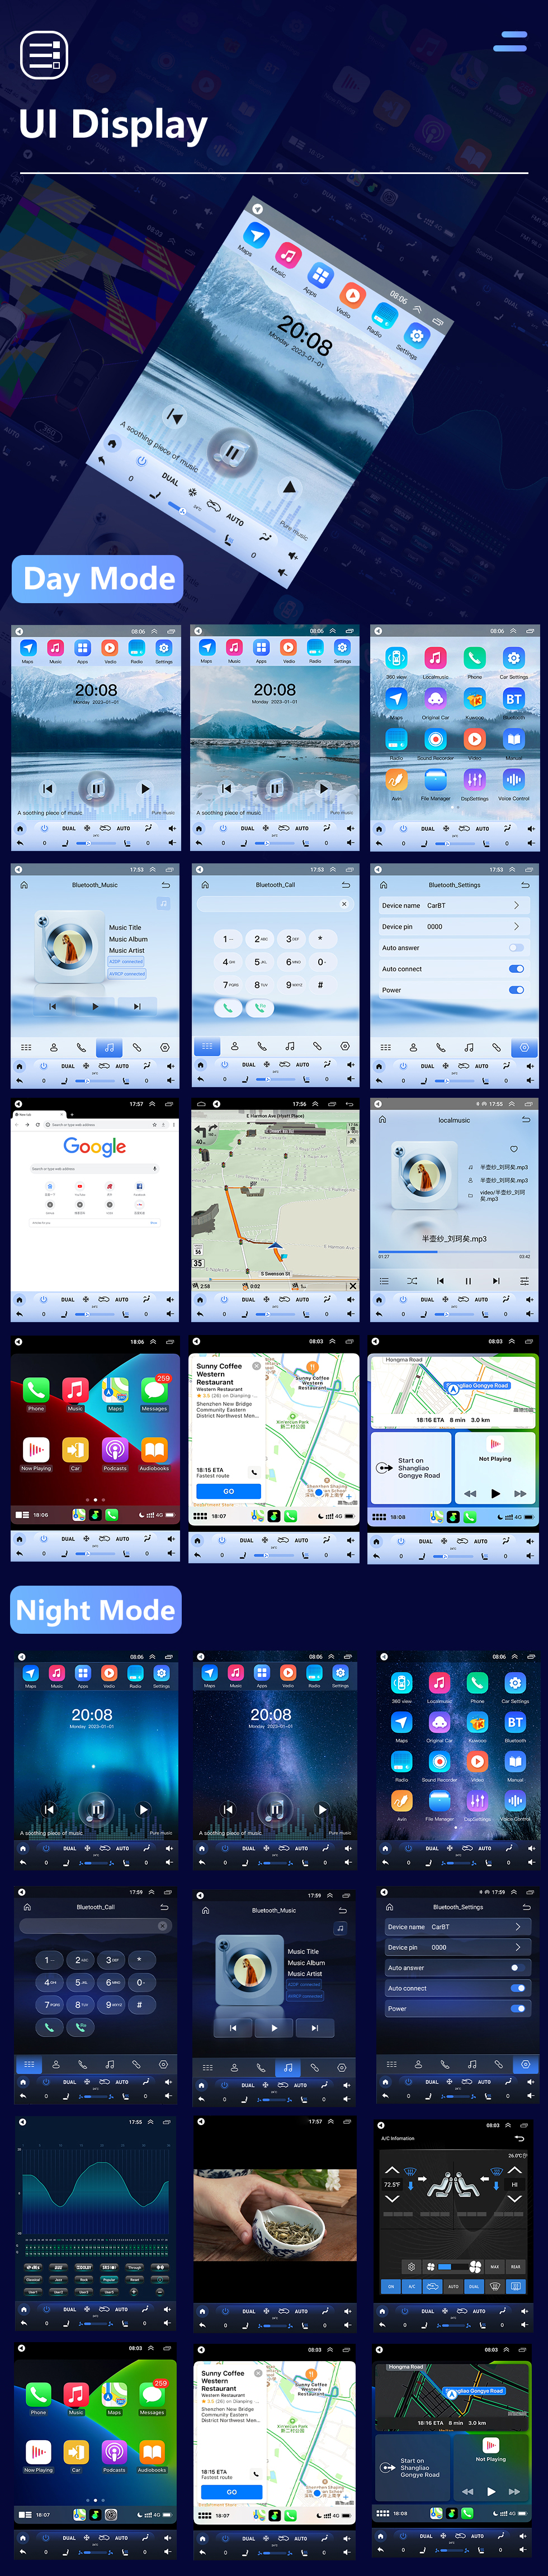 Seicane 2011-2015 nissan tiida 9.7 polegadas android 10.0 gps navegação rádio com hd touchscreen bluetooth wi-fi suporte carplay câmera traseira